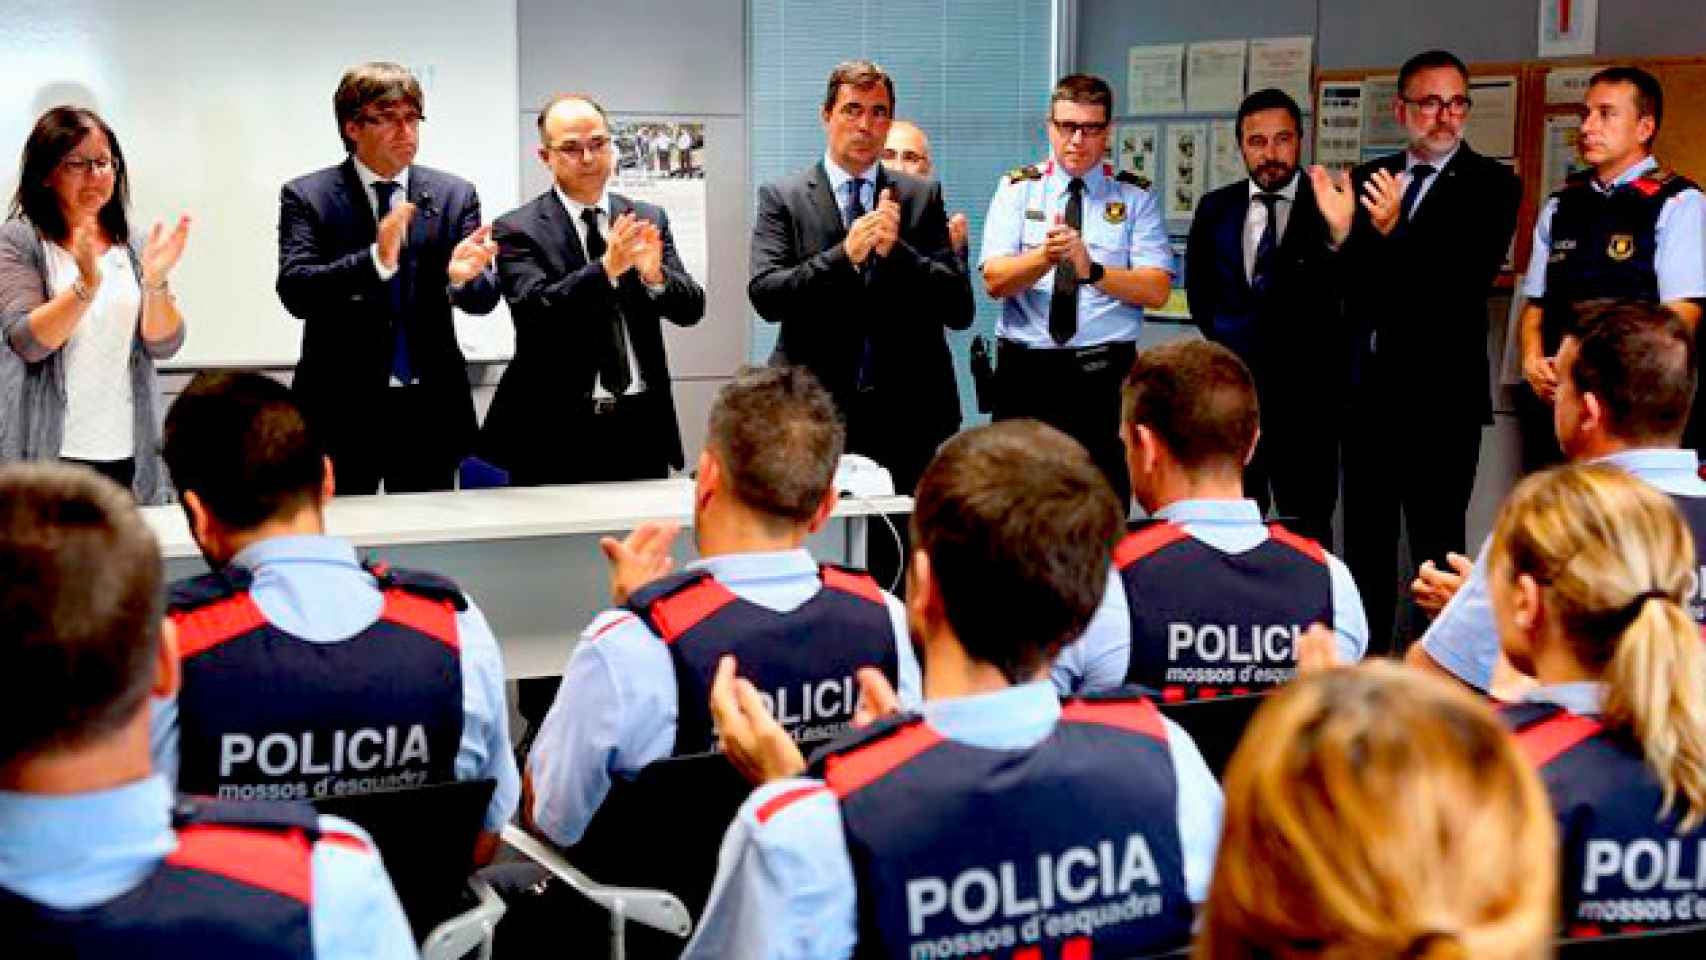 Carles Puigdemont aplaude a los mossos de la comisaria de Cambrils, quienes abatieron a cinco supuestos terroristas que acababan de arrollar a seis personas con un vehículo / EFE